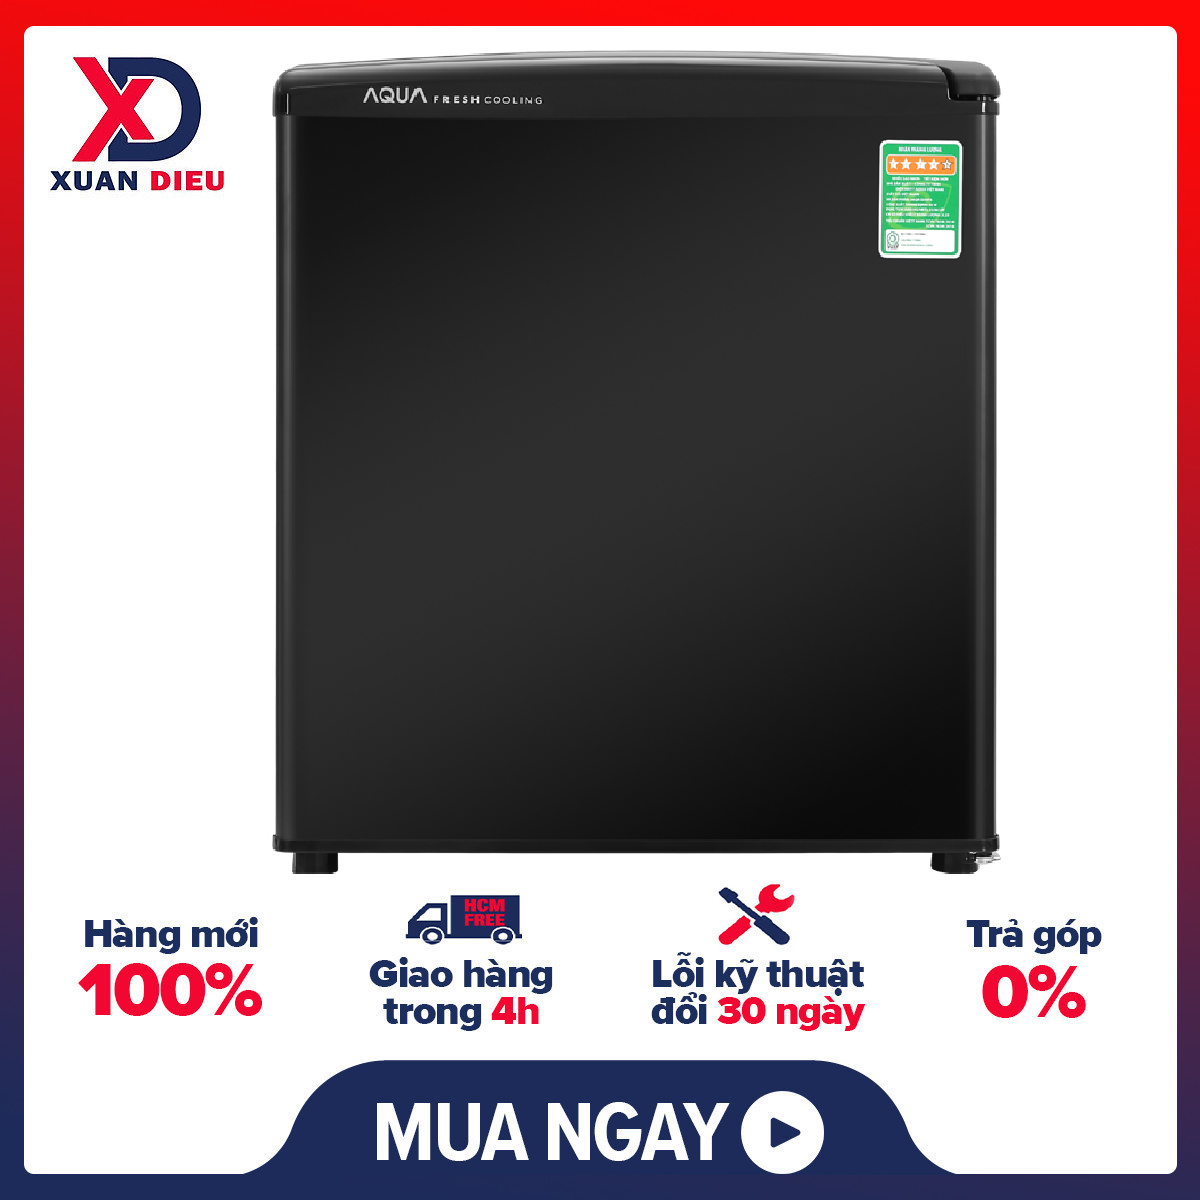 [HCM]Tủ lạnh Aqua 50 lít AQR-D59FA(BS) – Tiết kiệm điện nhờ công nghệ làm lạnh trực tiếp. Có khả năng làm đông thực phẩm với ngăn đá riêng biệt. Nút vặn điều chỉnh nhiệt độ dễ thao tác.